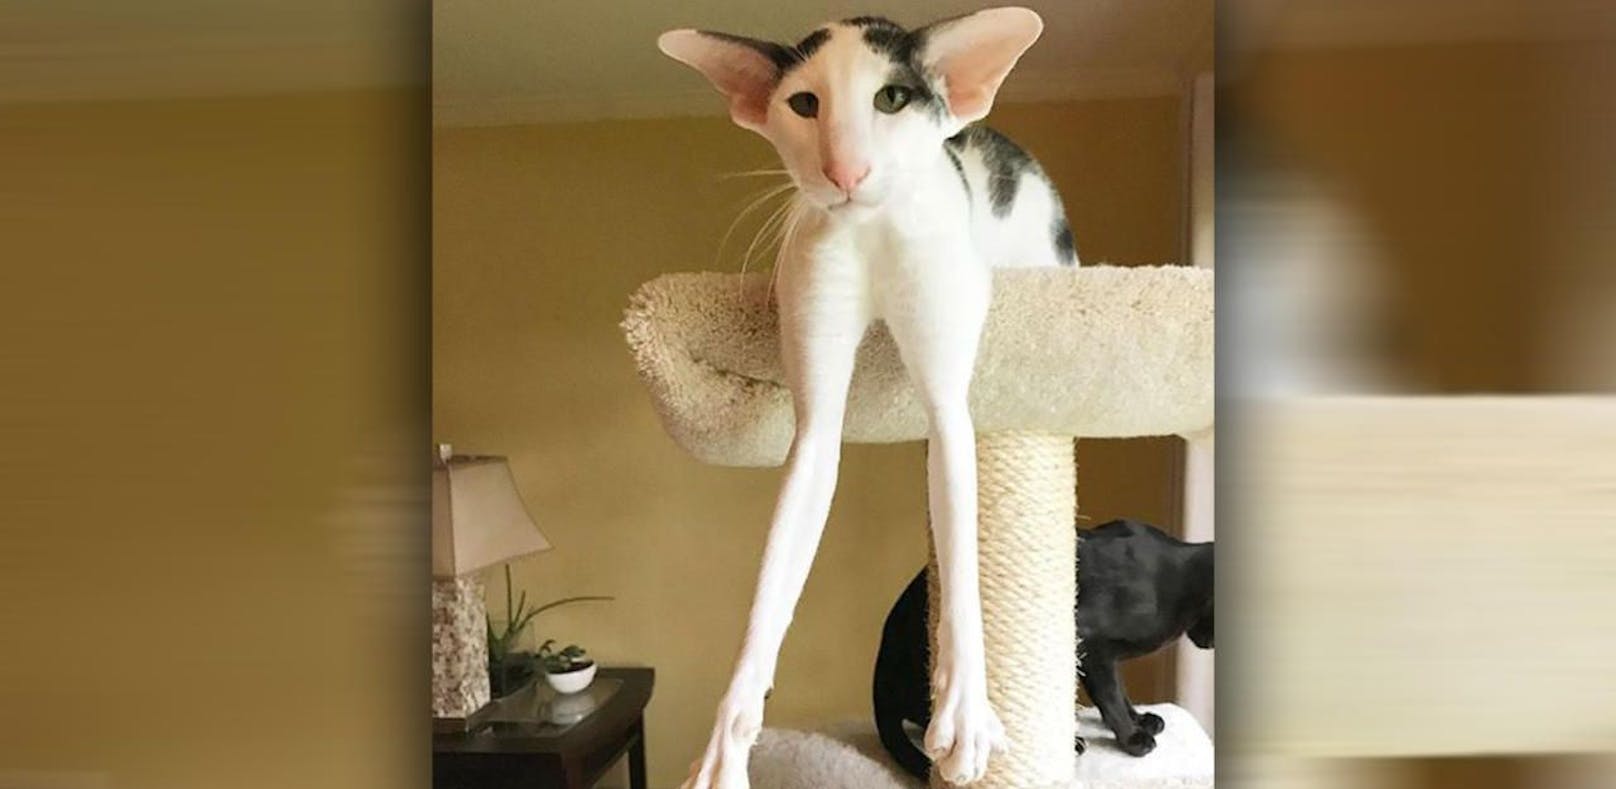 Diese Katze begeistert mit ihren langen Beinen